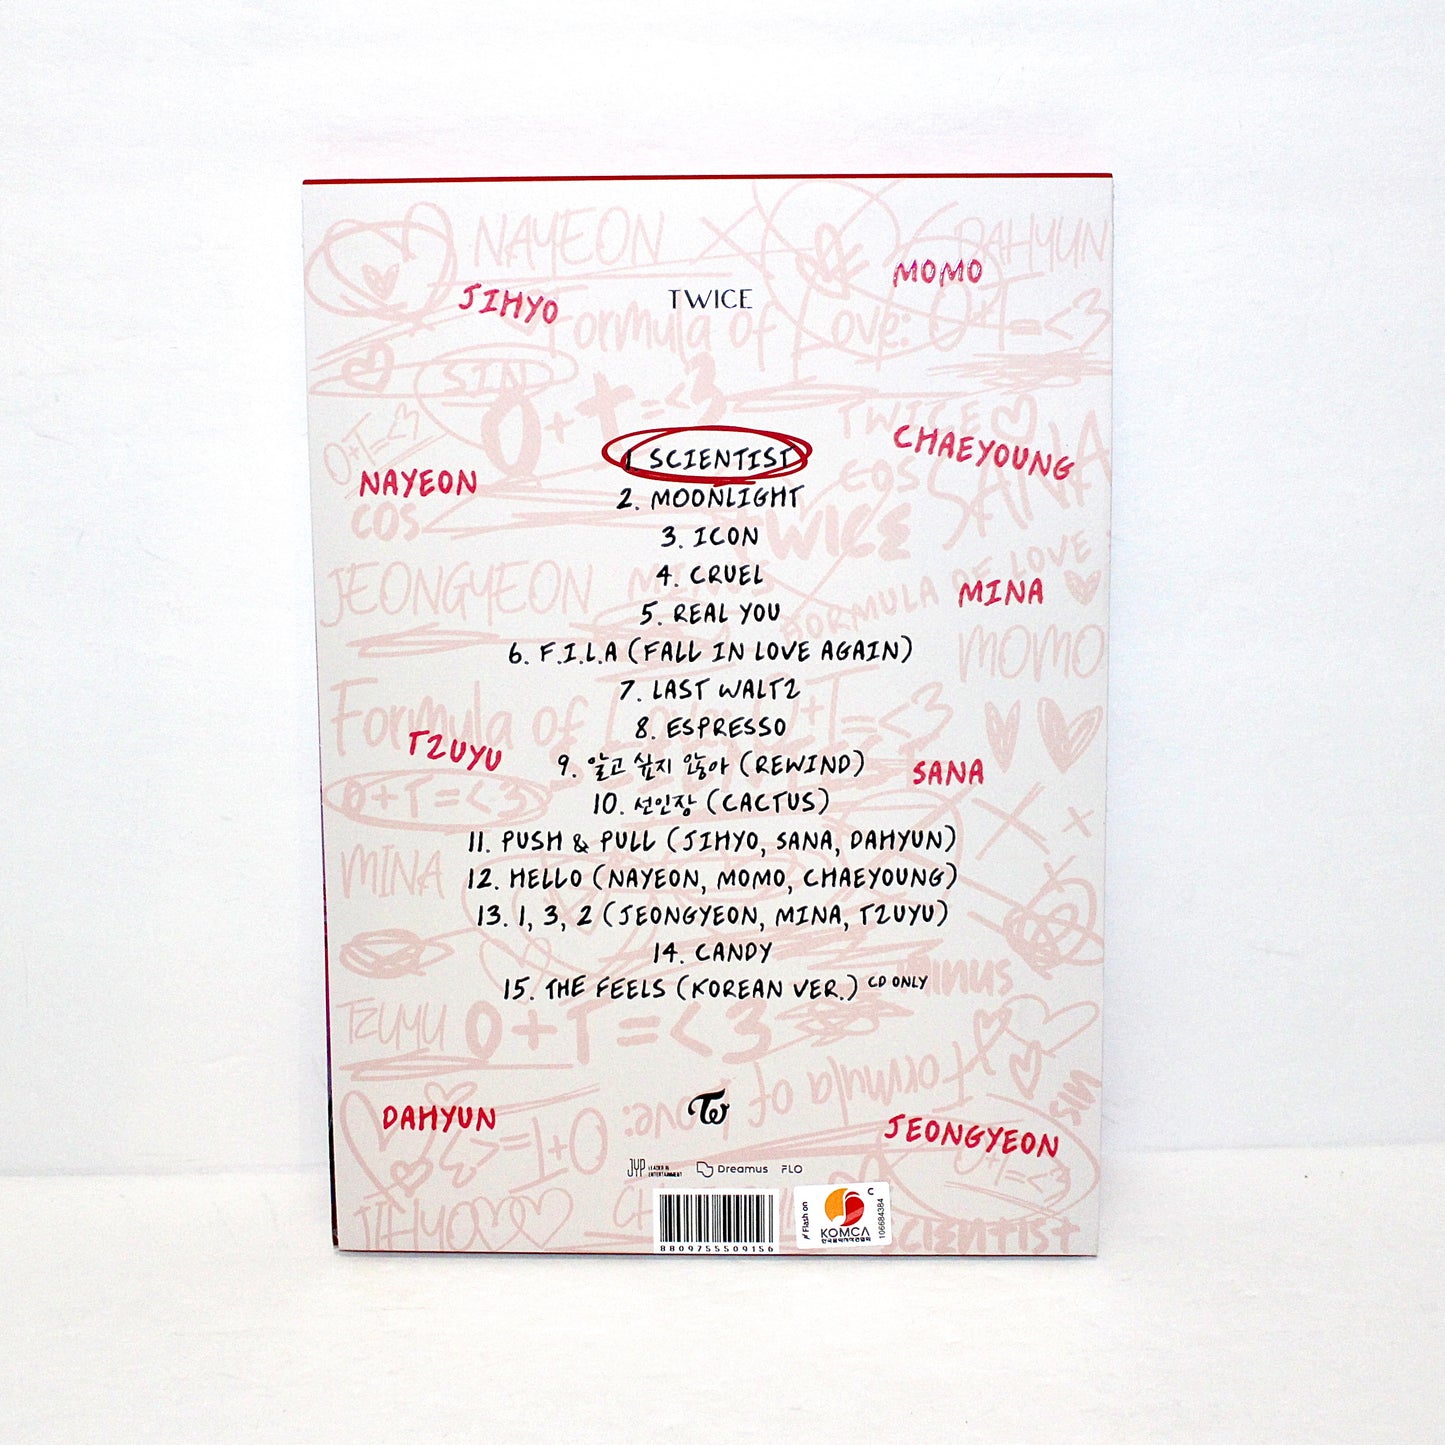 3er álbum de TWICE - Fórmula del amor: O+T=&lt;3 | Estudio sobre el amor ver.